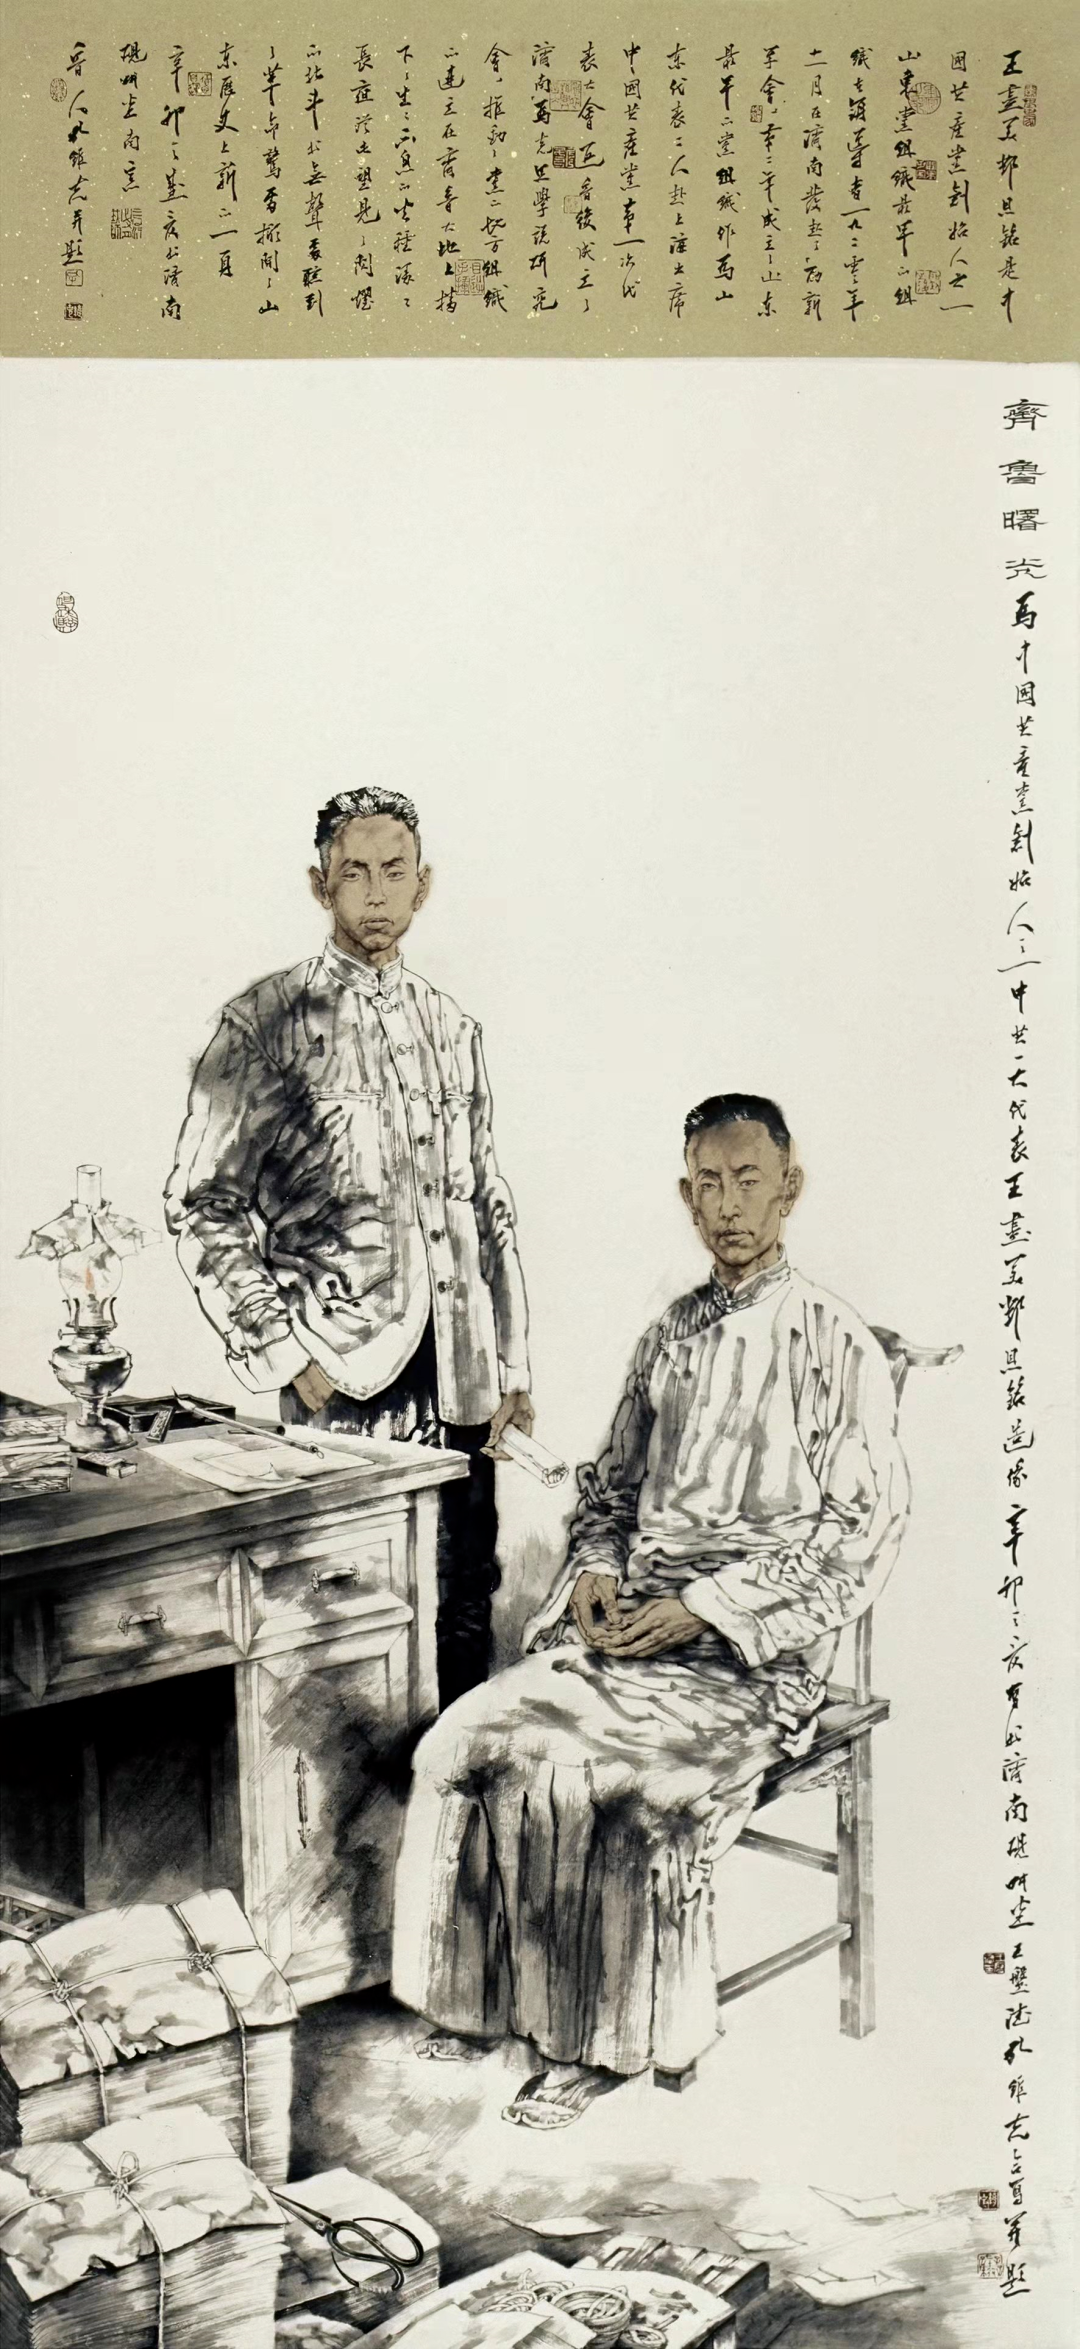 以笔墨记录时代，著名画家孔维克参展“水墨之界—中国当代书画名家学术邀请展”